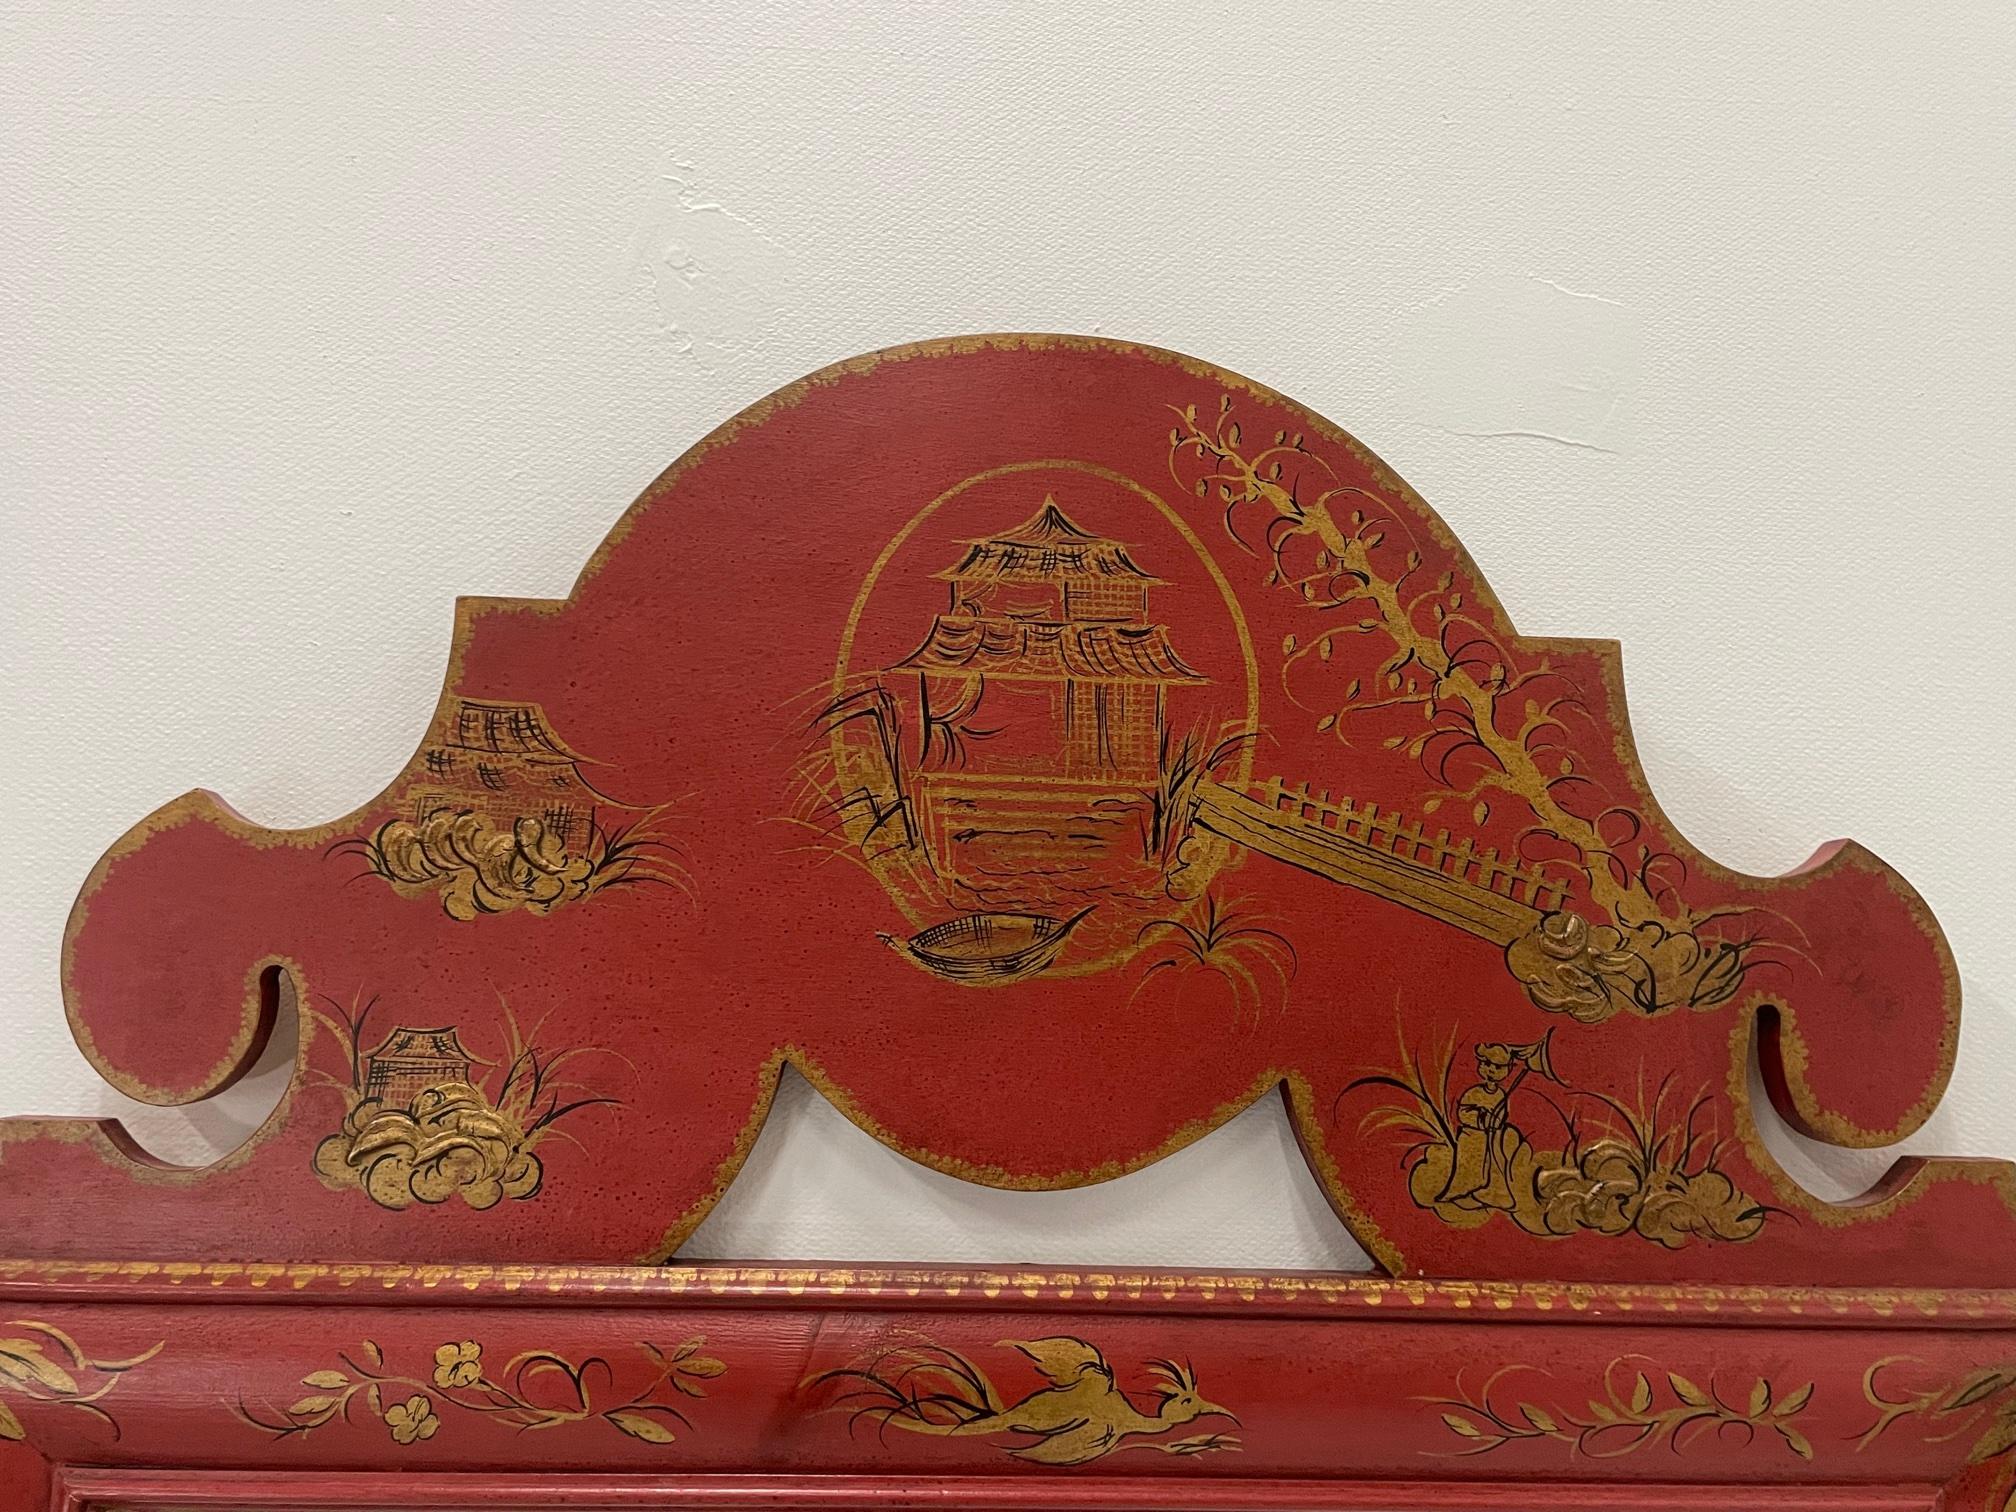 Magnifique grand miroir italien rouge porte-bonheur avec décoration peinte en chinoiserie dorée et sommet en forme de pagode.